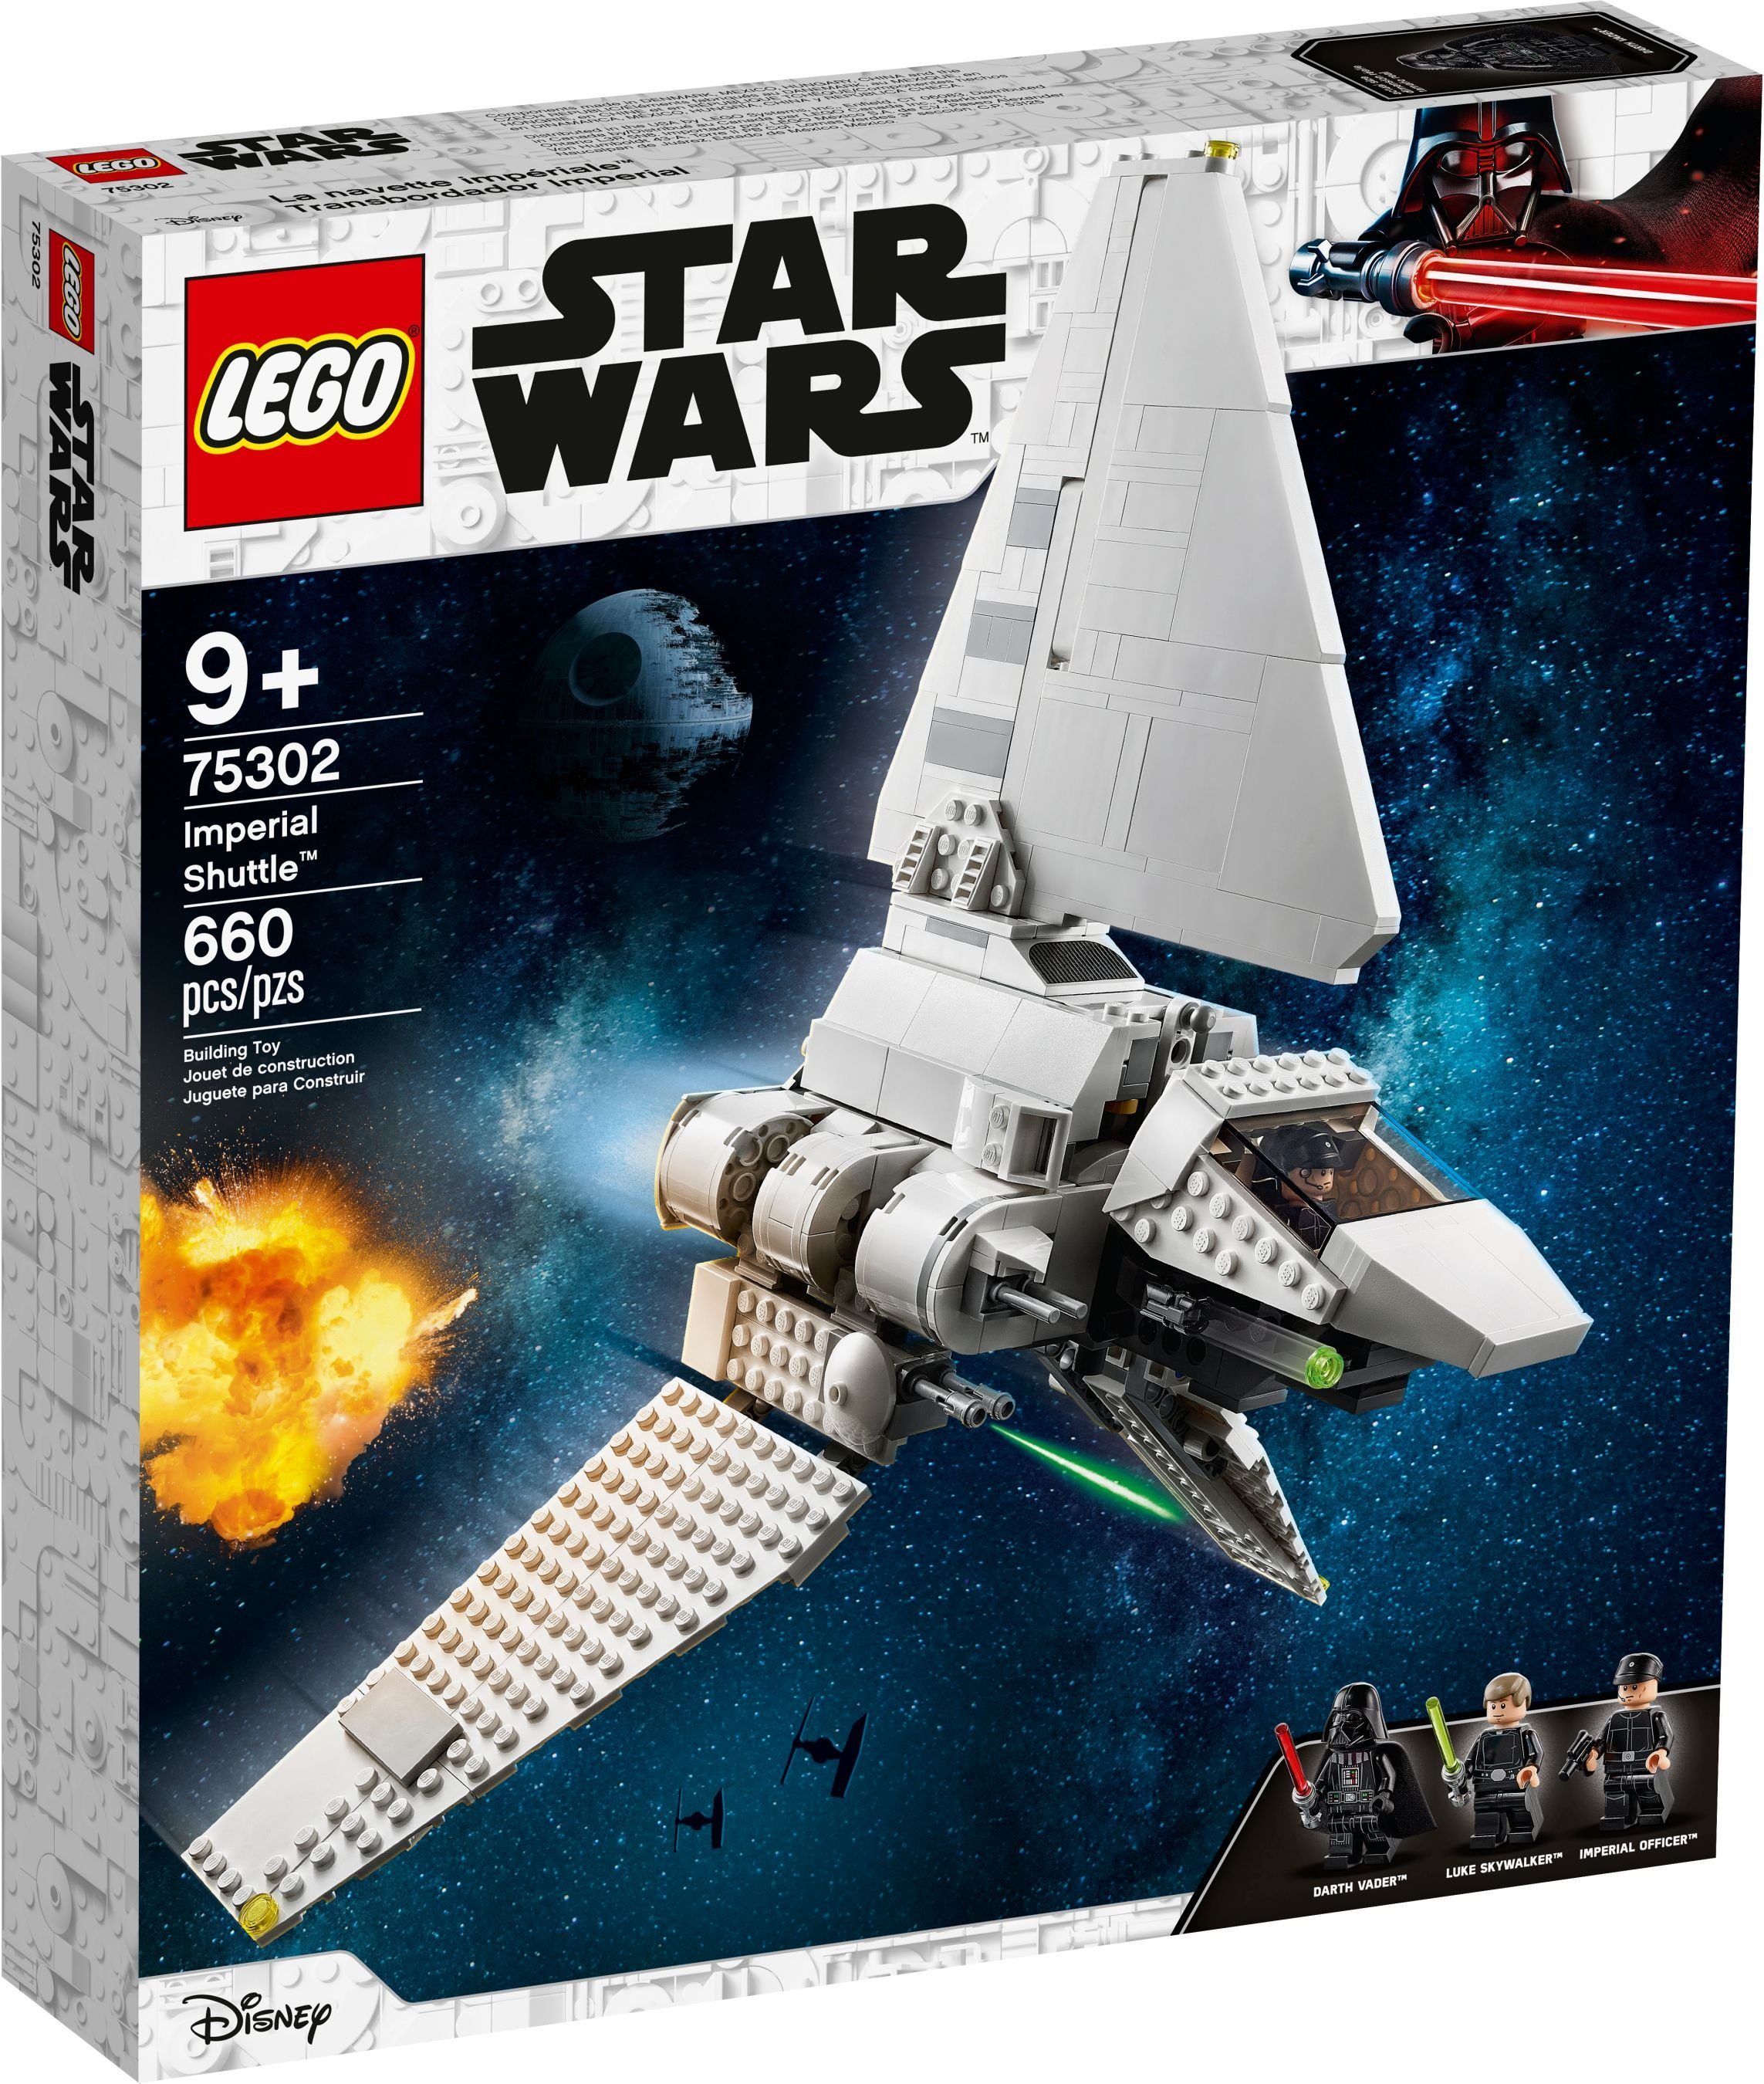 LEGO® Konstruktions-Spielset Star Wars - 75302 - Imperial Shuttle Bauset  mit Luke Skywalker mit Lichtschwert und Darth Vader Minifiguren, (660 St)